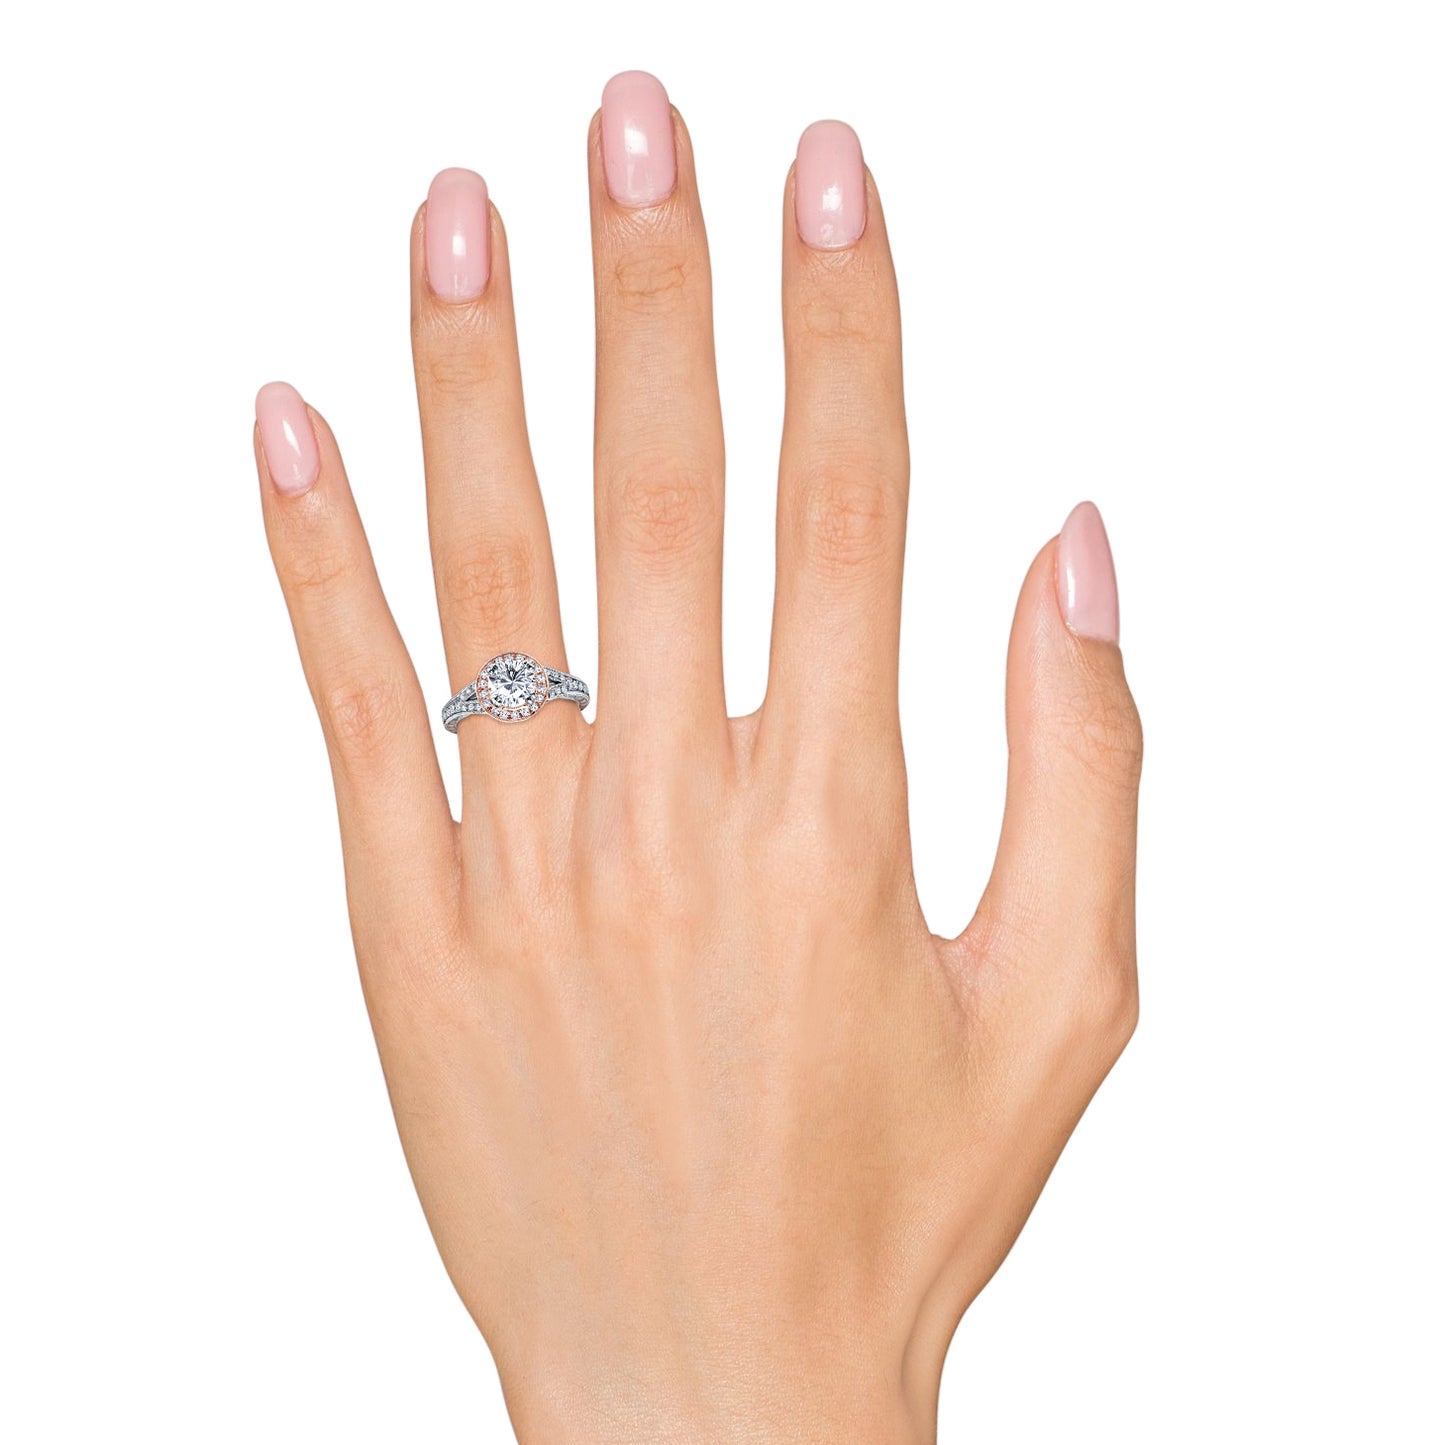 Elegant Halo Diamond Engraved Engagement Ring